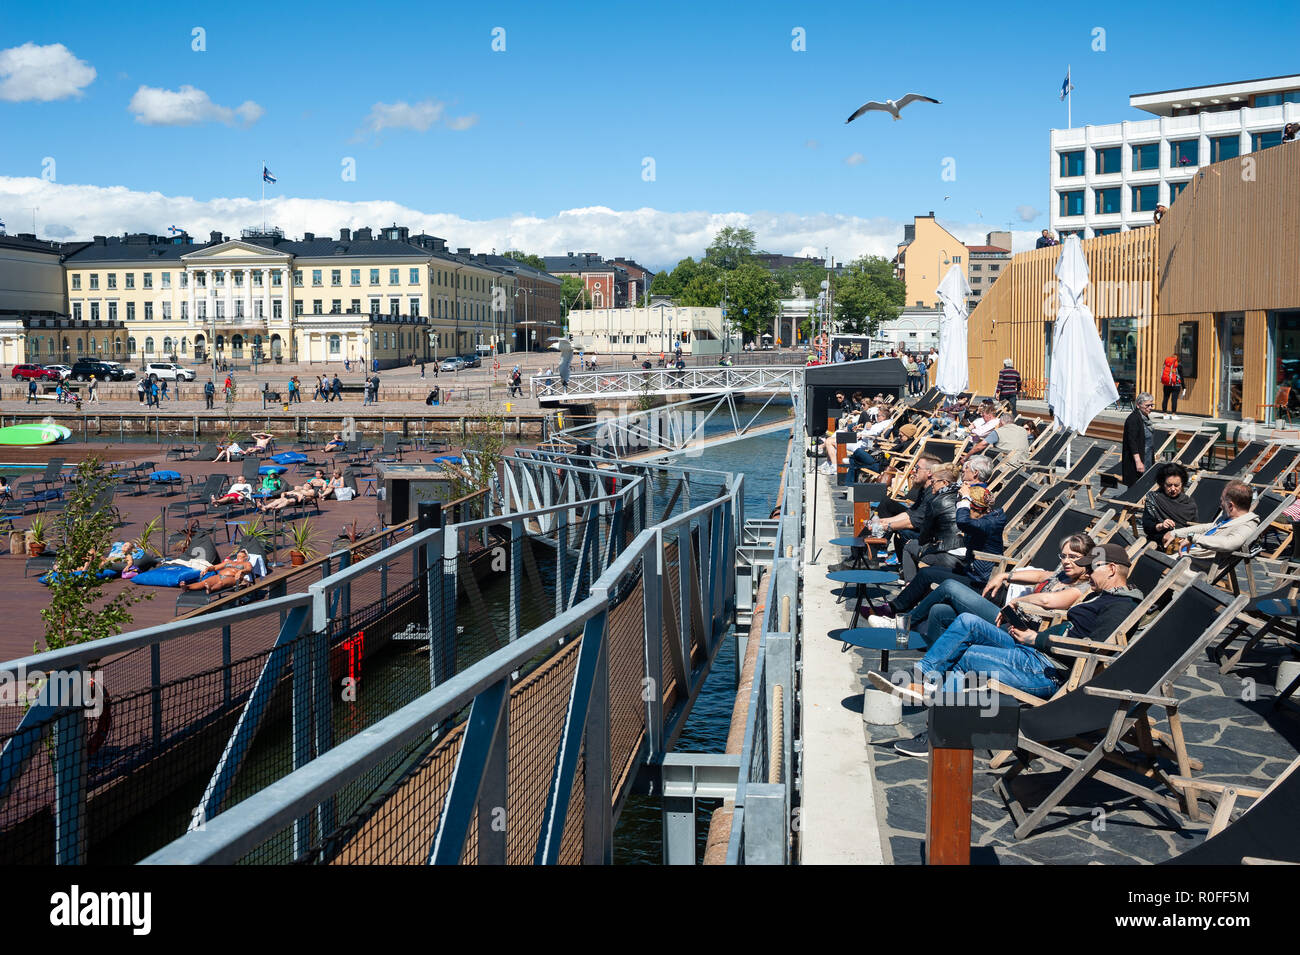 23.06.2018 - Helsinki, Finlande, Europe - une vue sur la mer d'Allas terrasse de piscine avec le port, la place du marché et le palais présidentiel. Banque D'Images